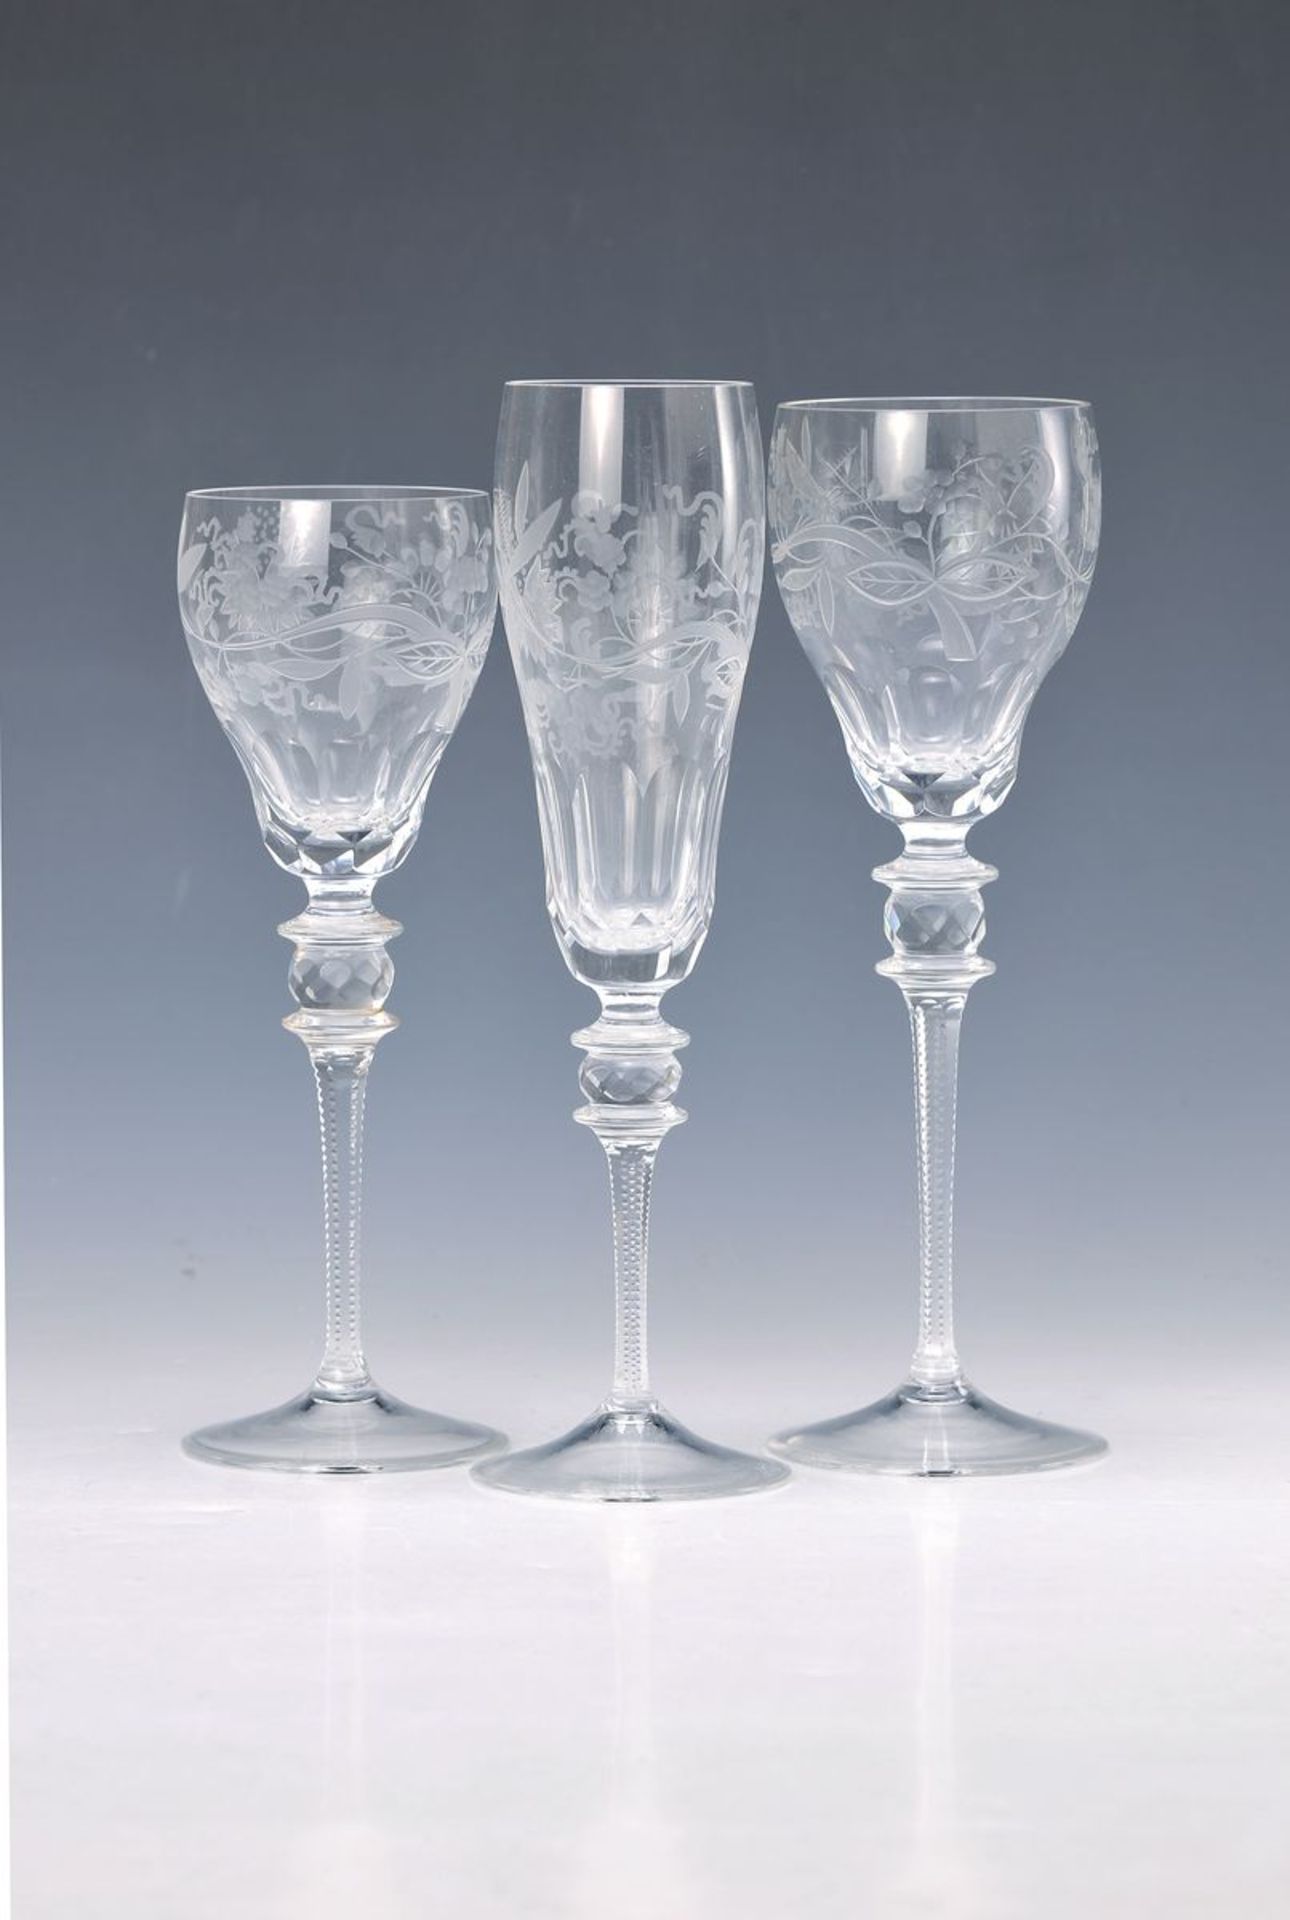 12 Gläser, Theresienthal, 20. Jh., farbloses Kristallglas, reich geschnitten und geschliffen, 4